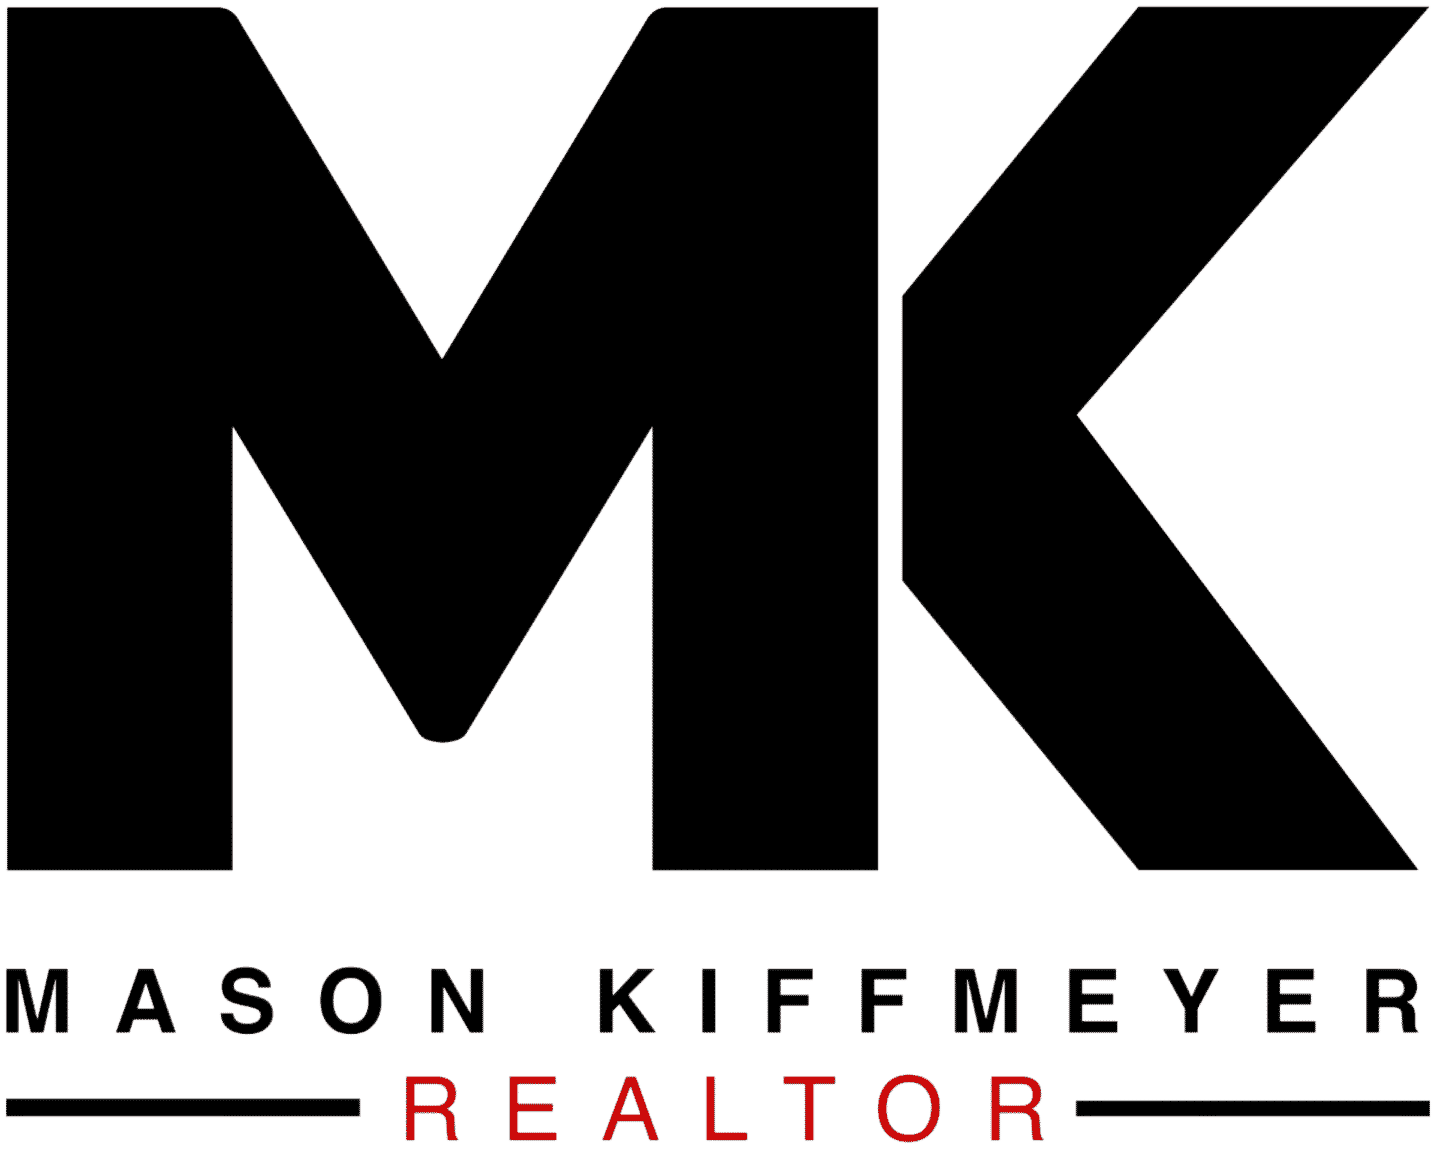 Mason Kiffmeyer Realtor logo